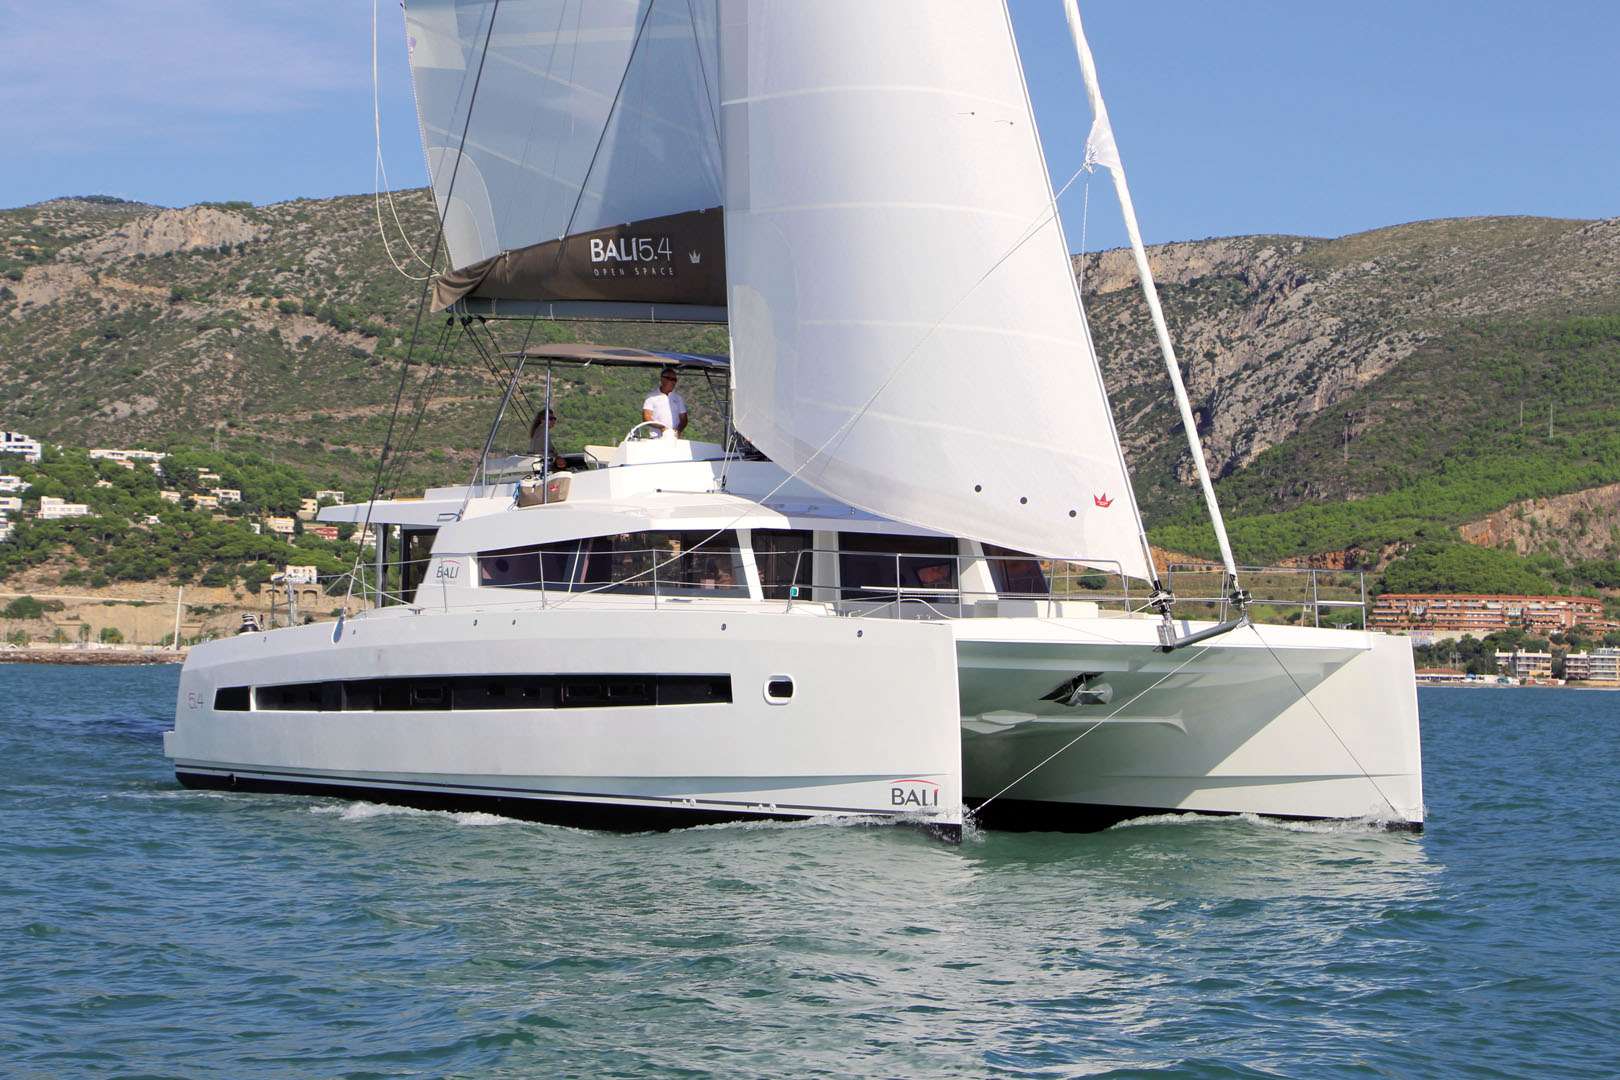 MIM OCEAN ONE - Yacht Charter Menorca & Boat hire in Balearics & Spain 1